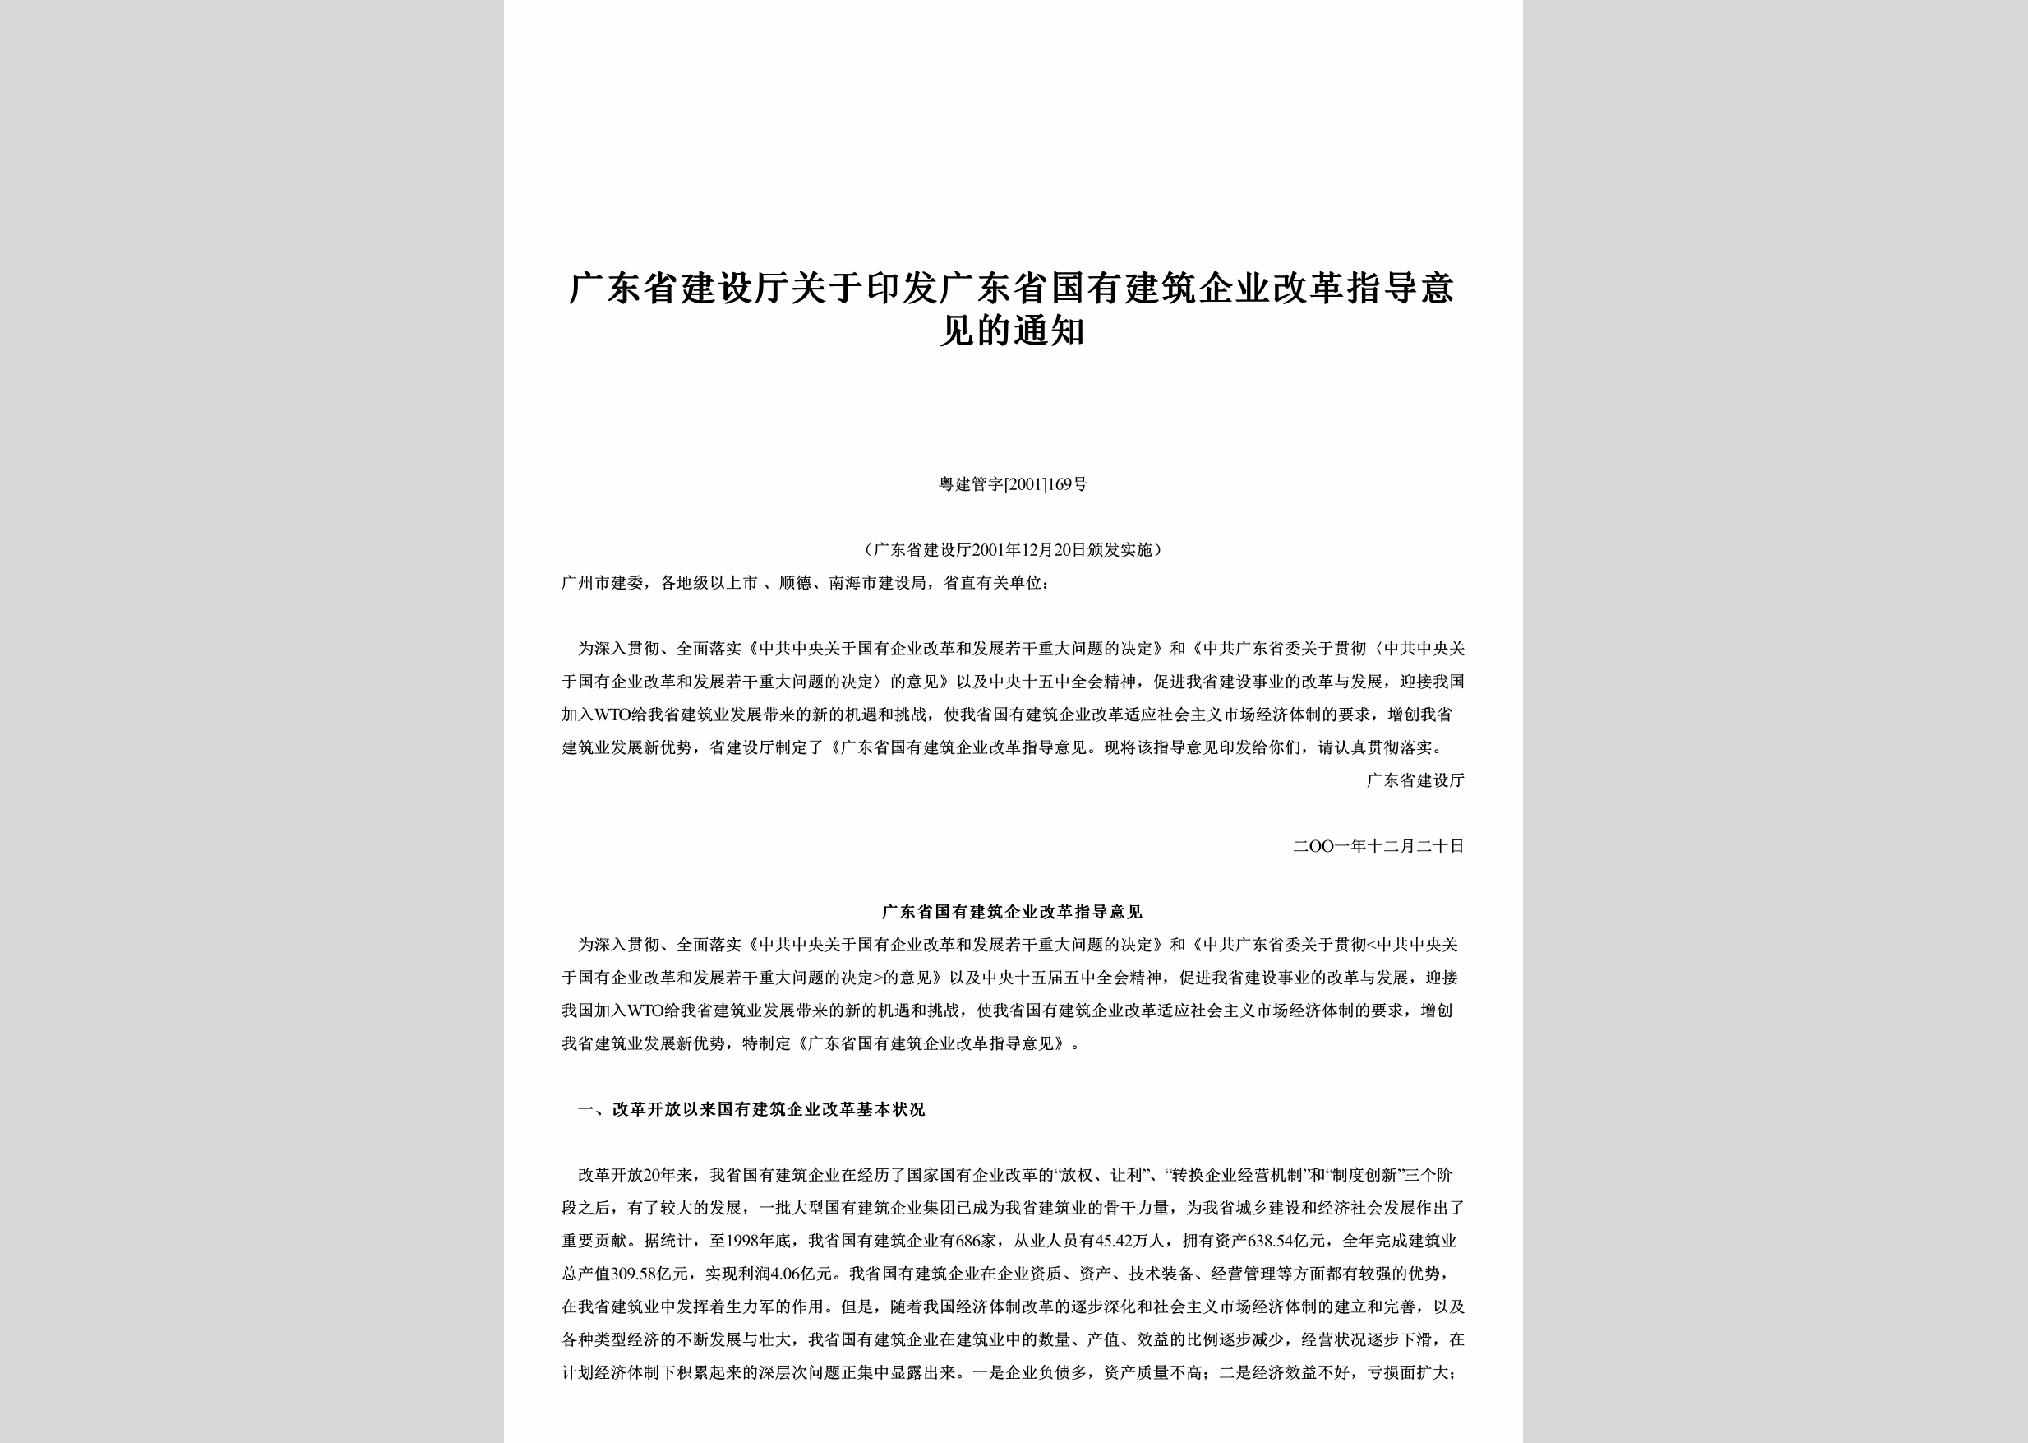 粤建管字[2001]169号：关于印发广东省国有建筑企业改革指导意见的通知